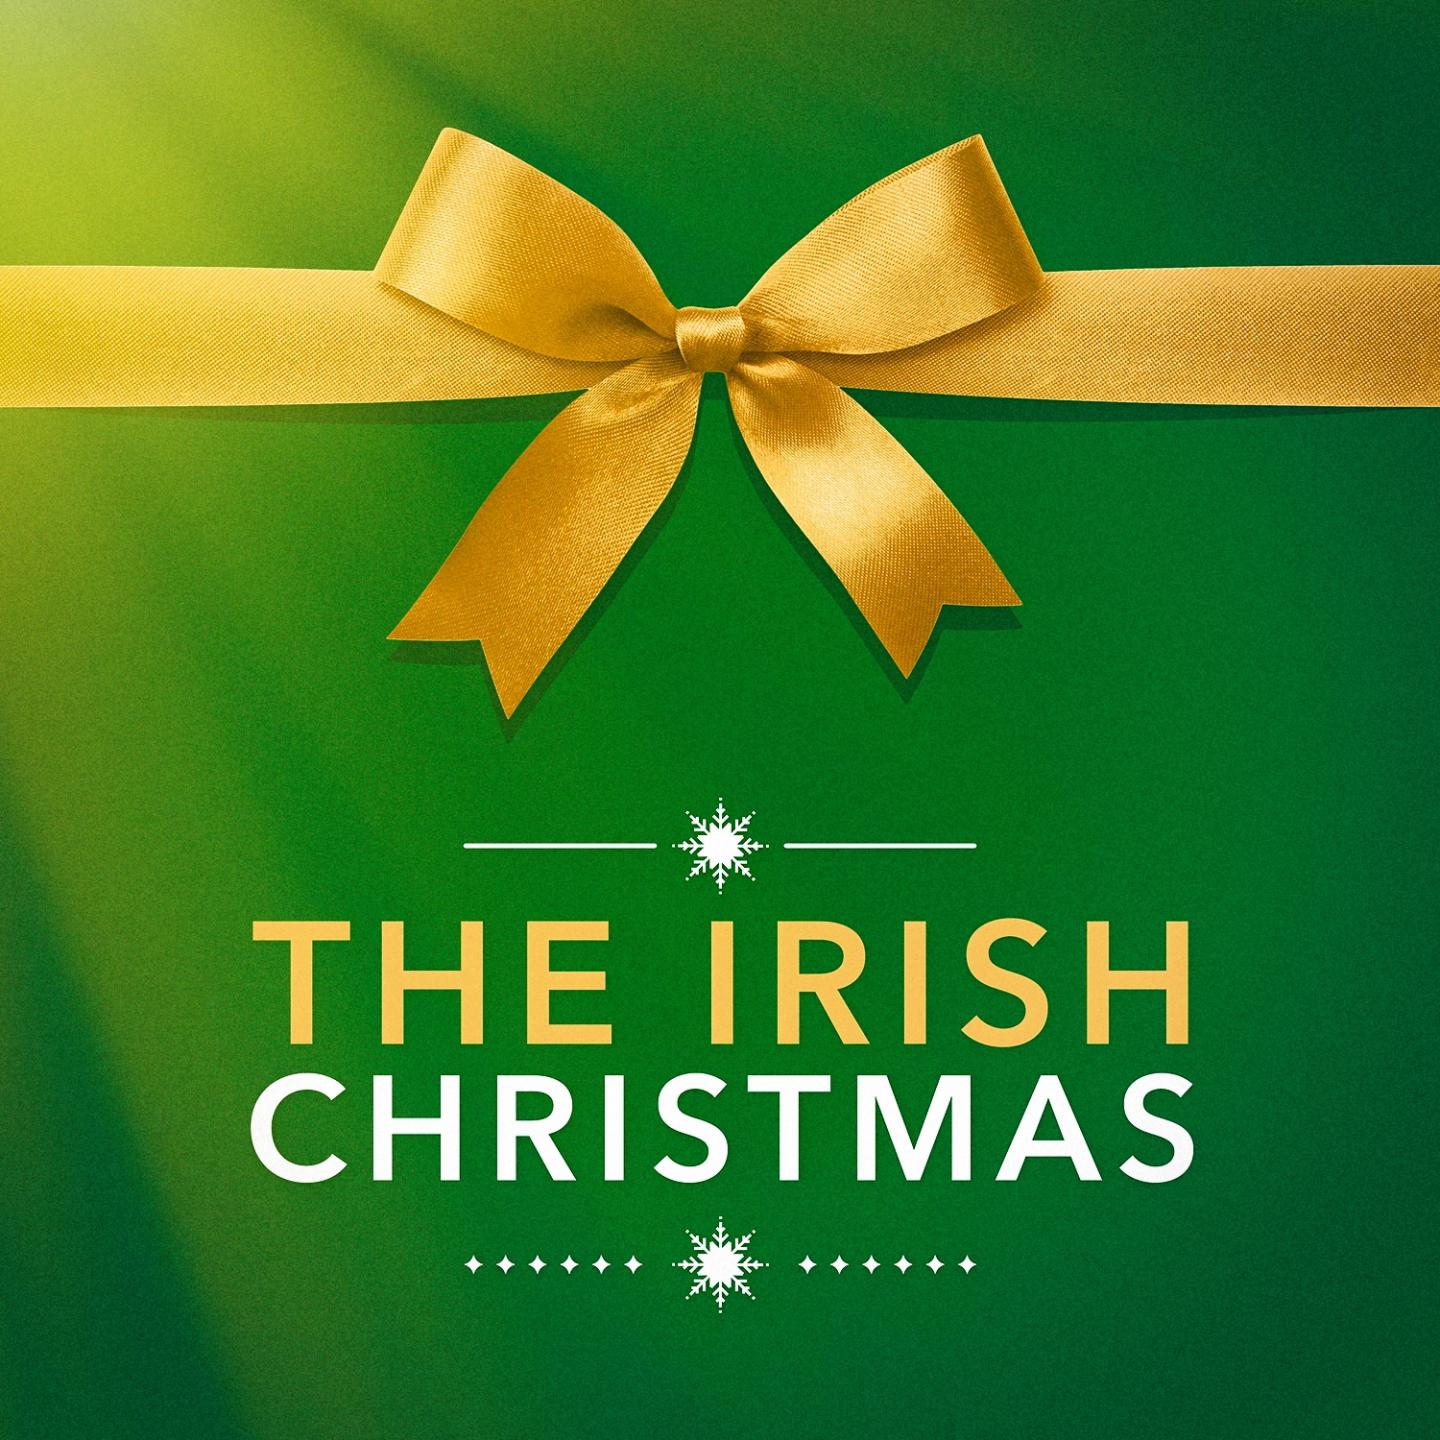 The Irish Christmas